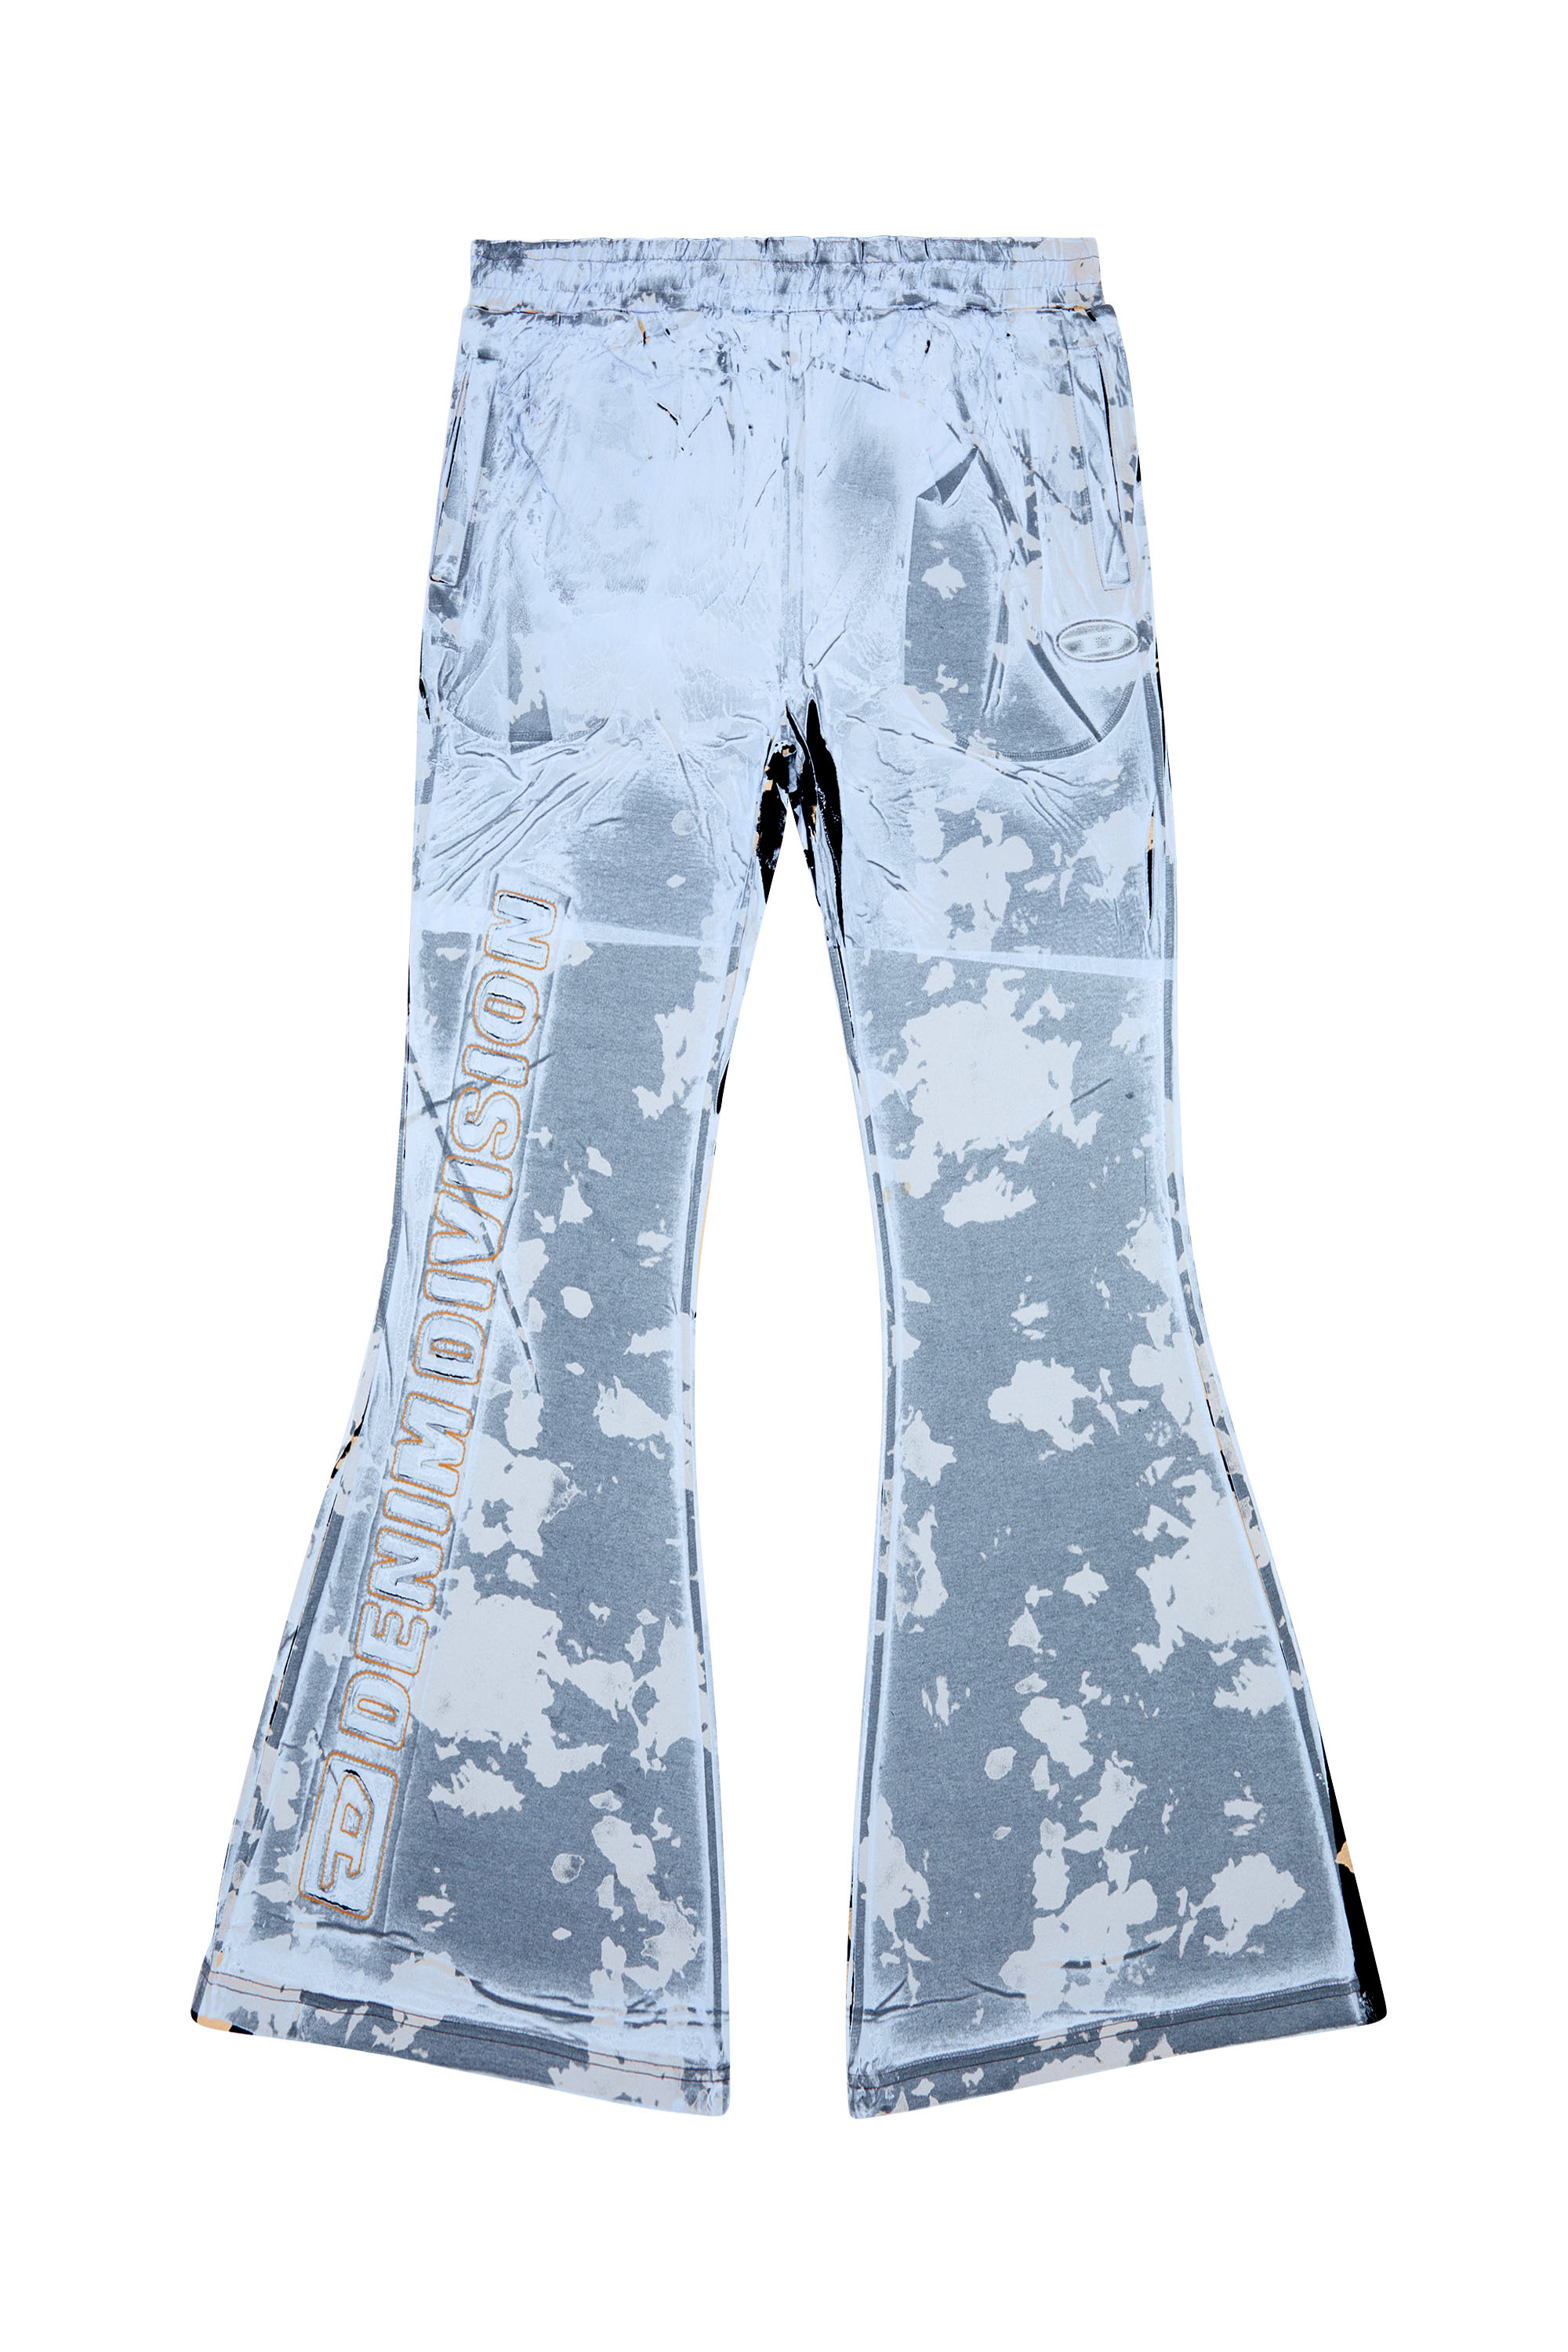 Diesel - P-BELB-P1, Unisex Pantalones deportivos acampanados de tejido recubierto in Azul marino - Image 7